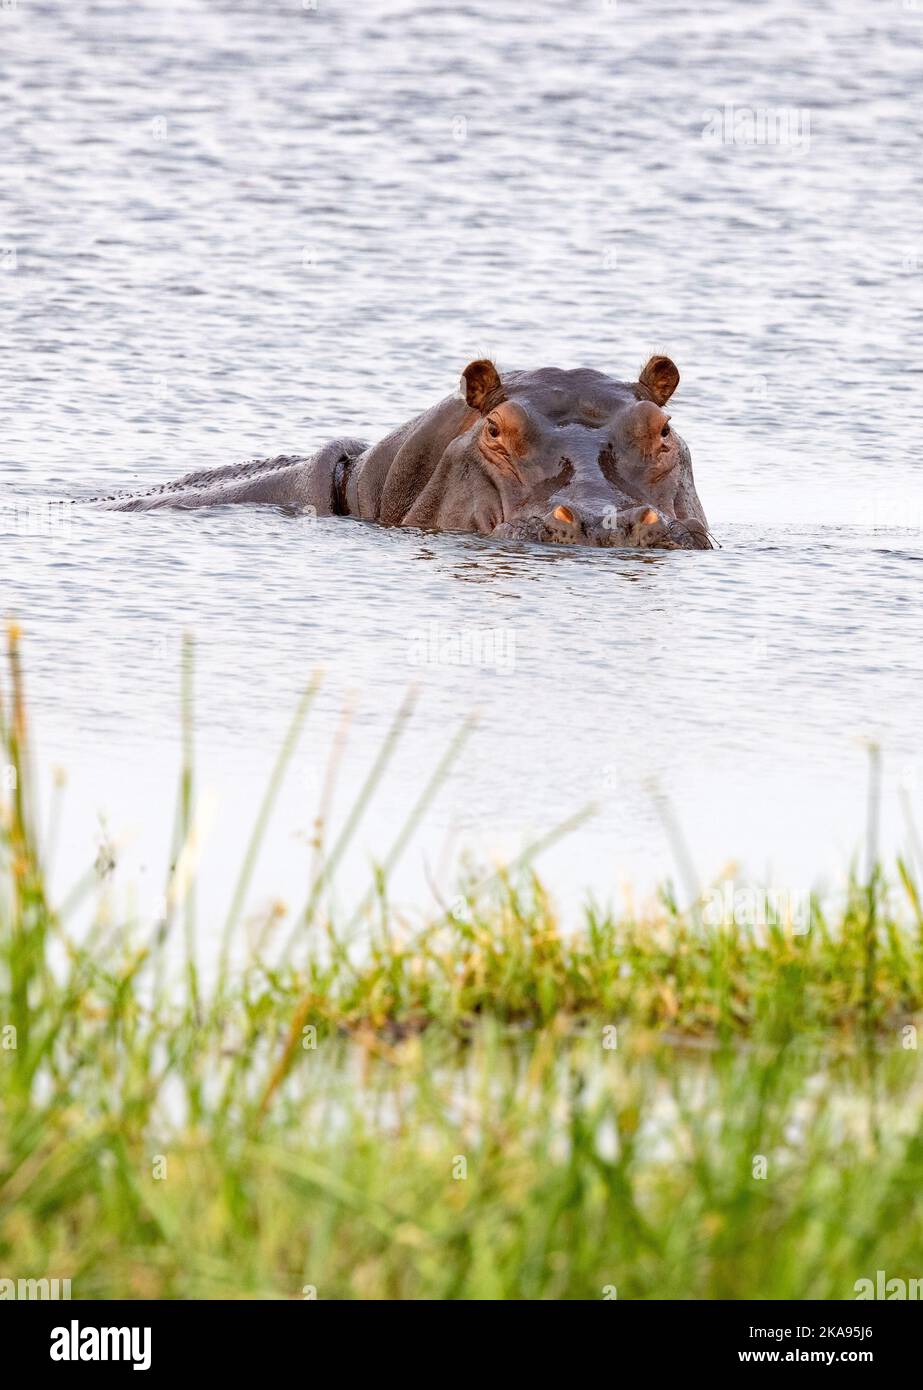 Un ippopotamo adulto in acqua, ippopotamo, ippopotamo anfibio, Okavango Delta, Botswana Africa. Fauna selvatica africana Foto Stock